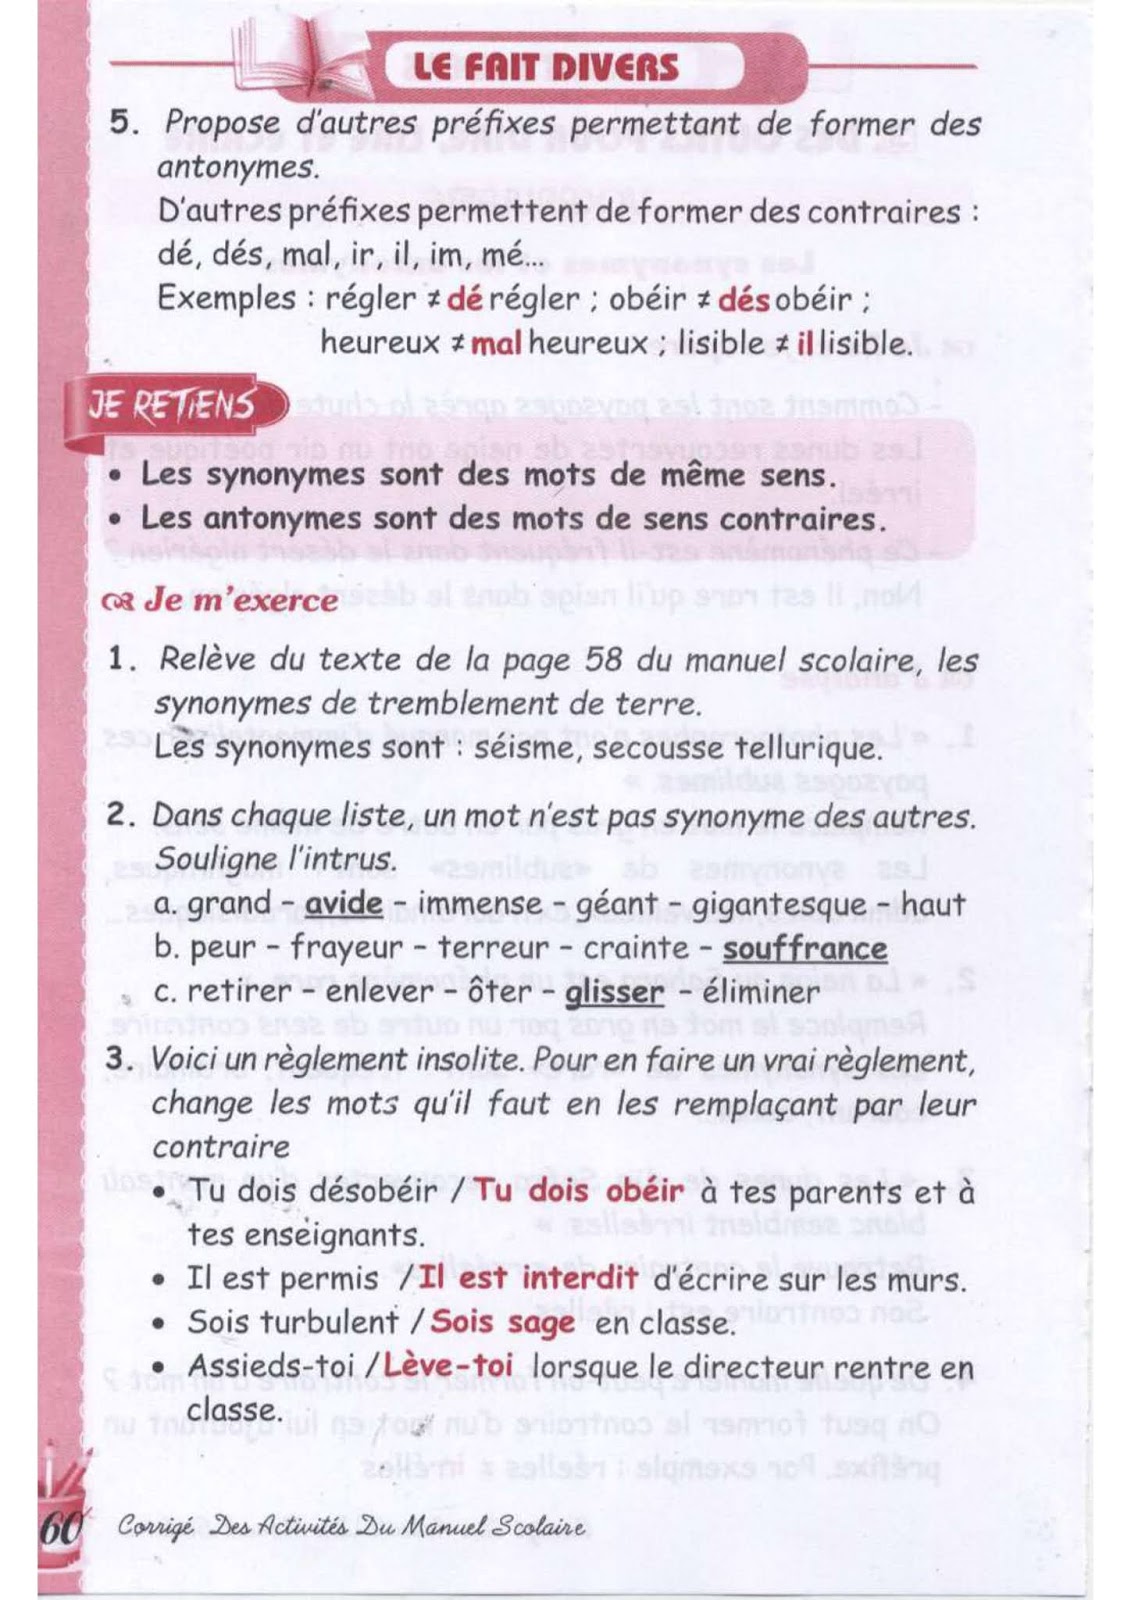 حل تمارين صفحة 58 الفرنسية للسنة الثالثة متوسط - الجيل الثاني